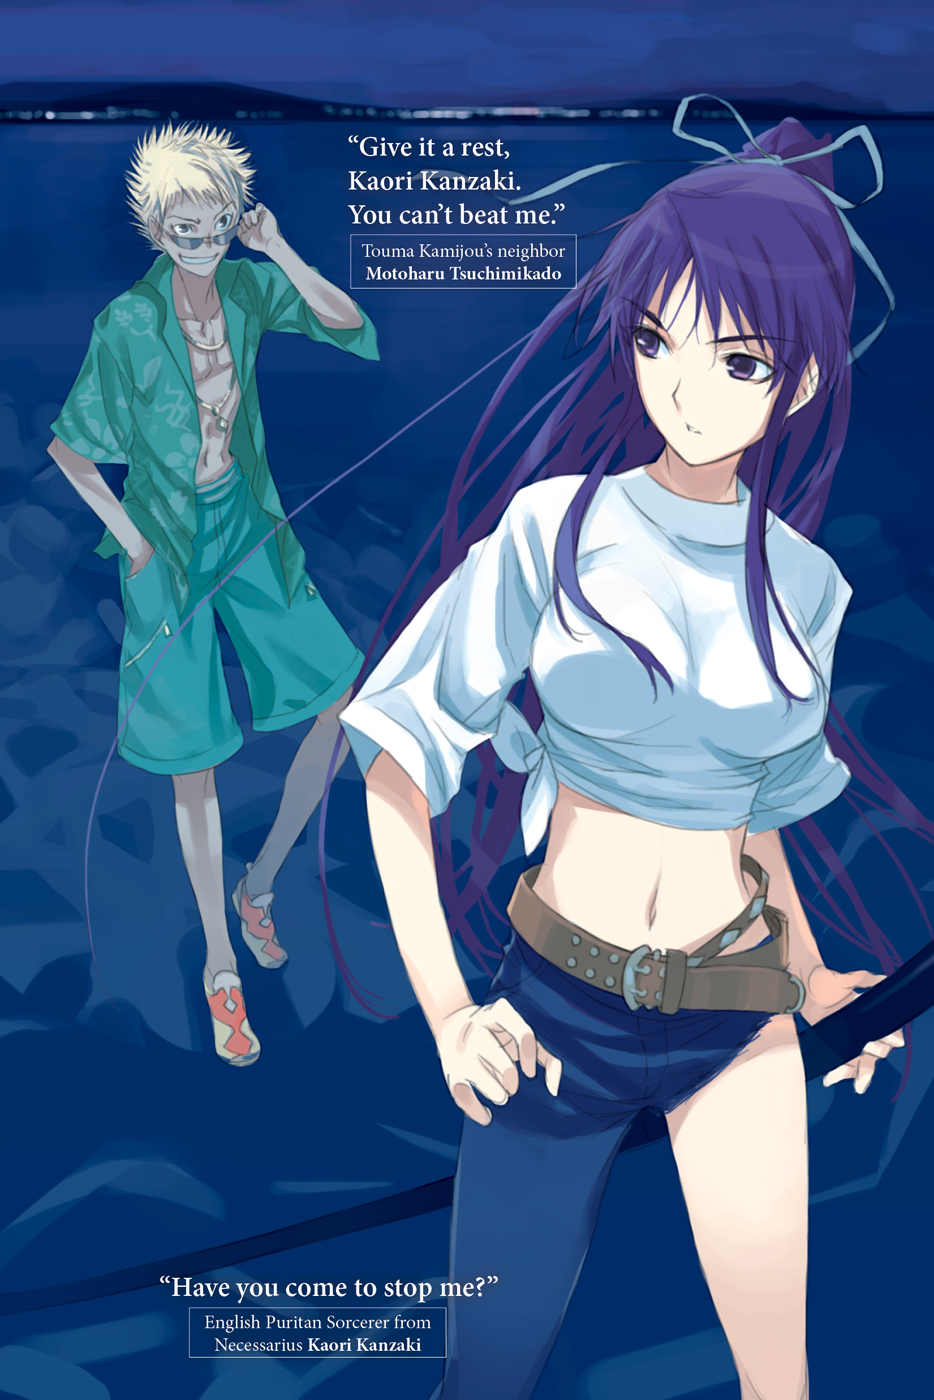 Ilustración del Vol. 7 en la que aparecen MotoHaru Tsuchimikado y Kaori Kanzaki. Toaru Majutsu no Index / A Certain Magical Index